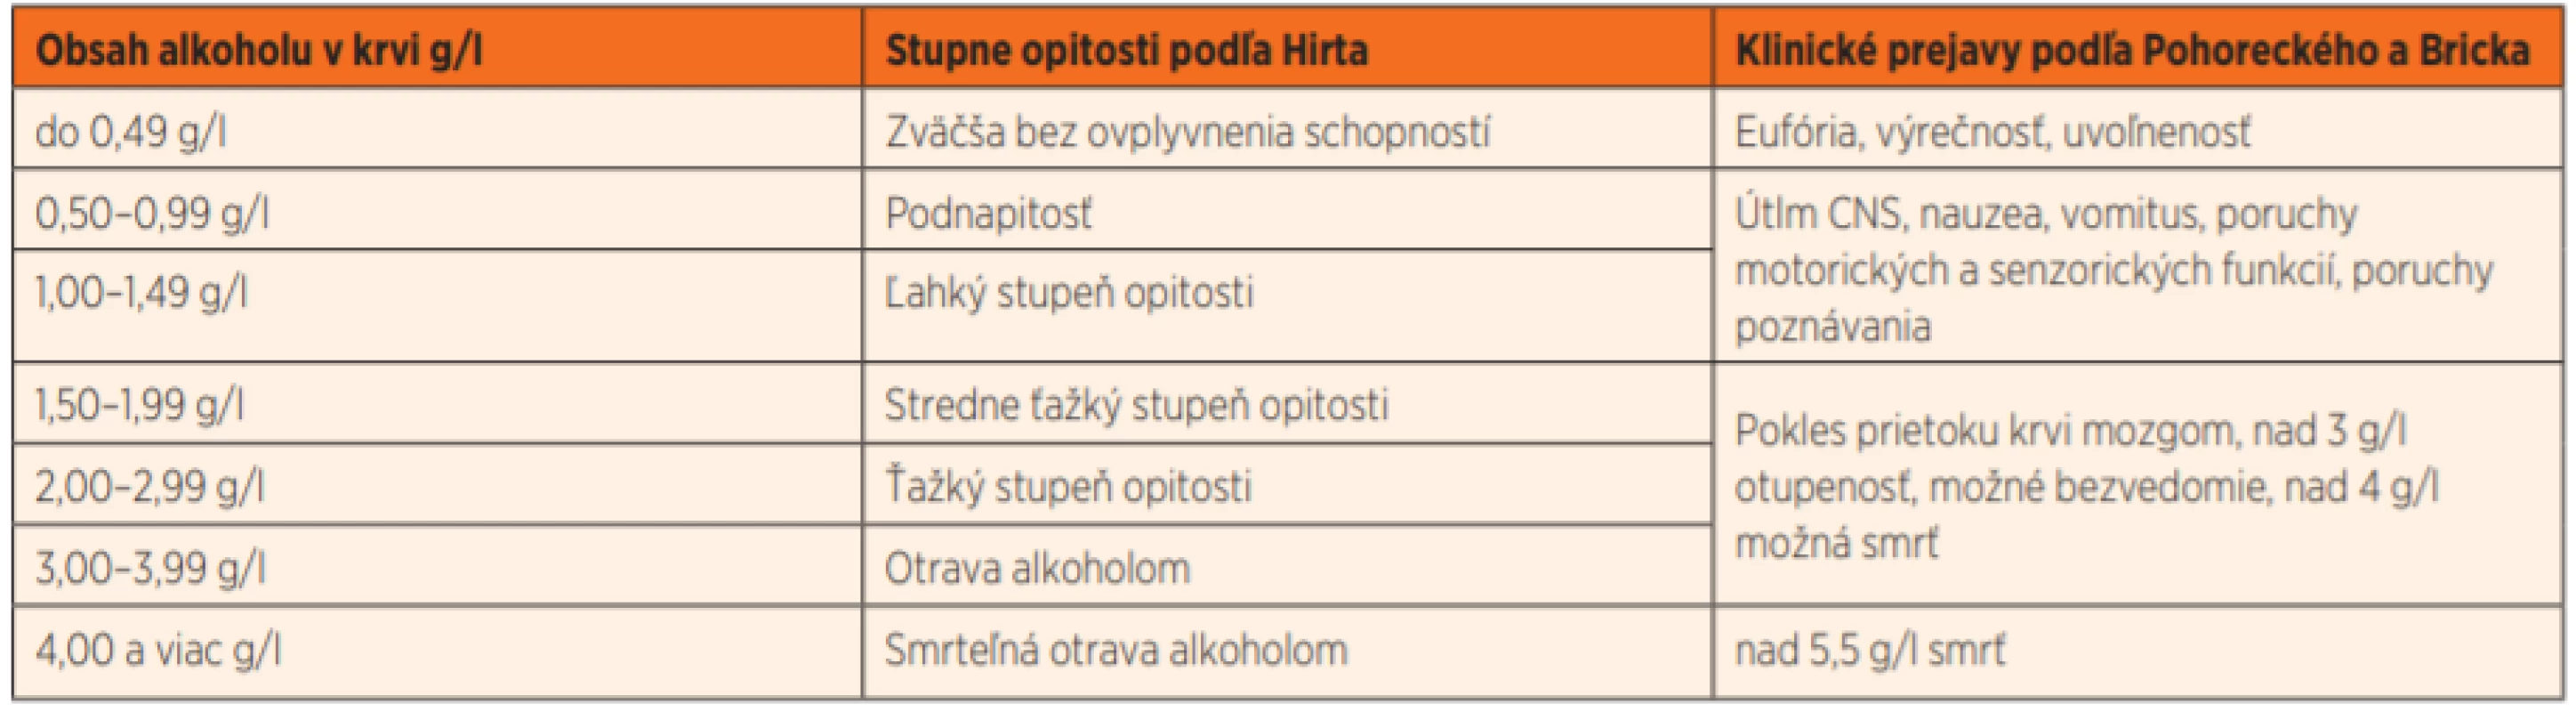 Klasifikácia stupňov opitosti a ich klinických prejavov v závislosti od hladiny alkoholu v krvi [16, 17].